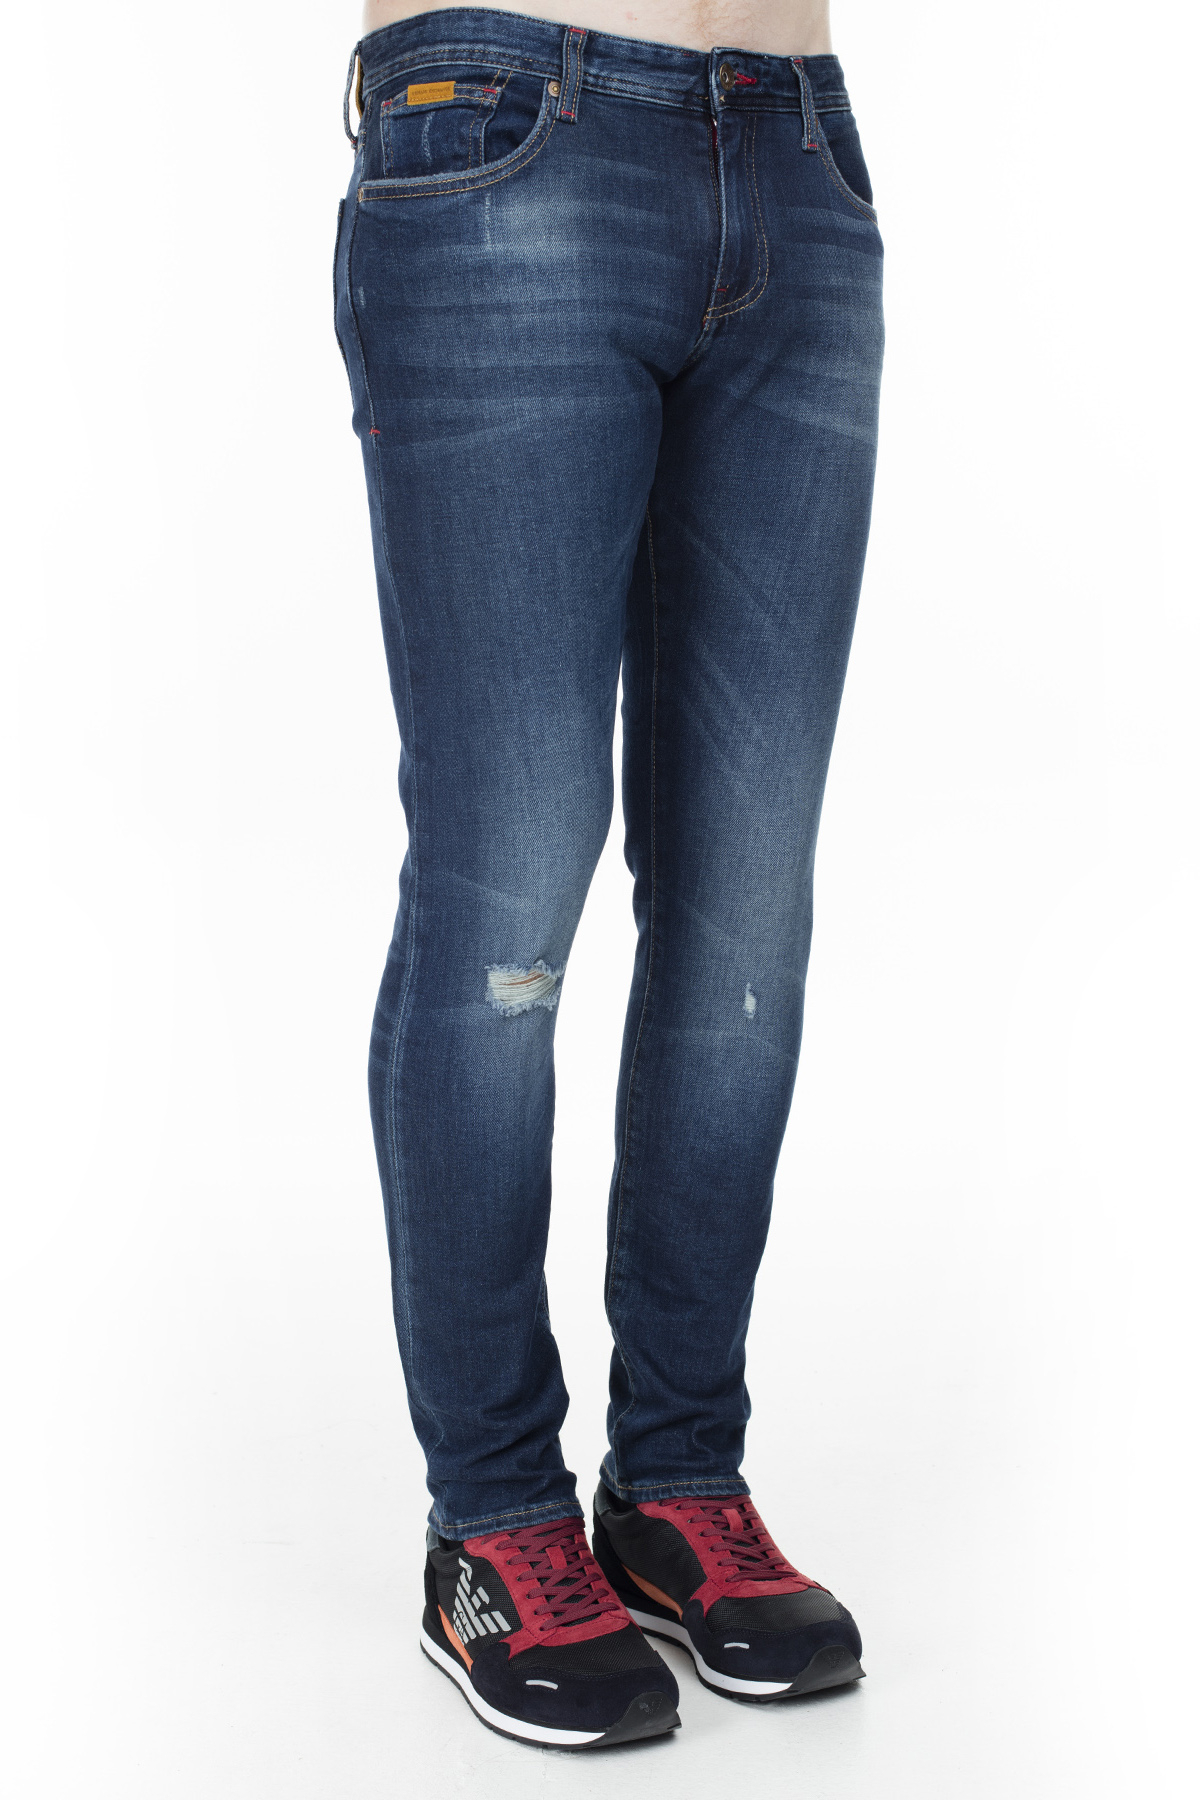 Armani Exchange J14 Jeans Erkek Kot Pantolon S 6GZJ14 Z1RLZ 1500 LACİVERT